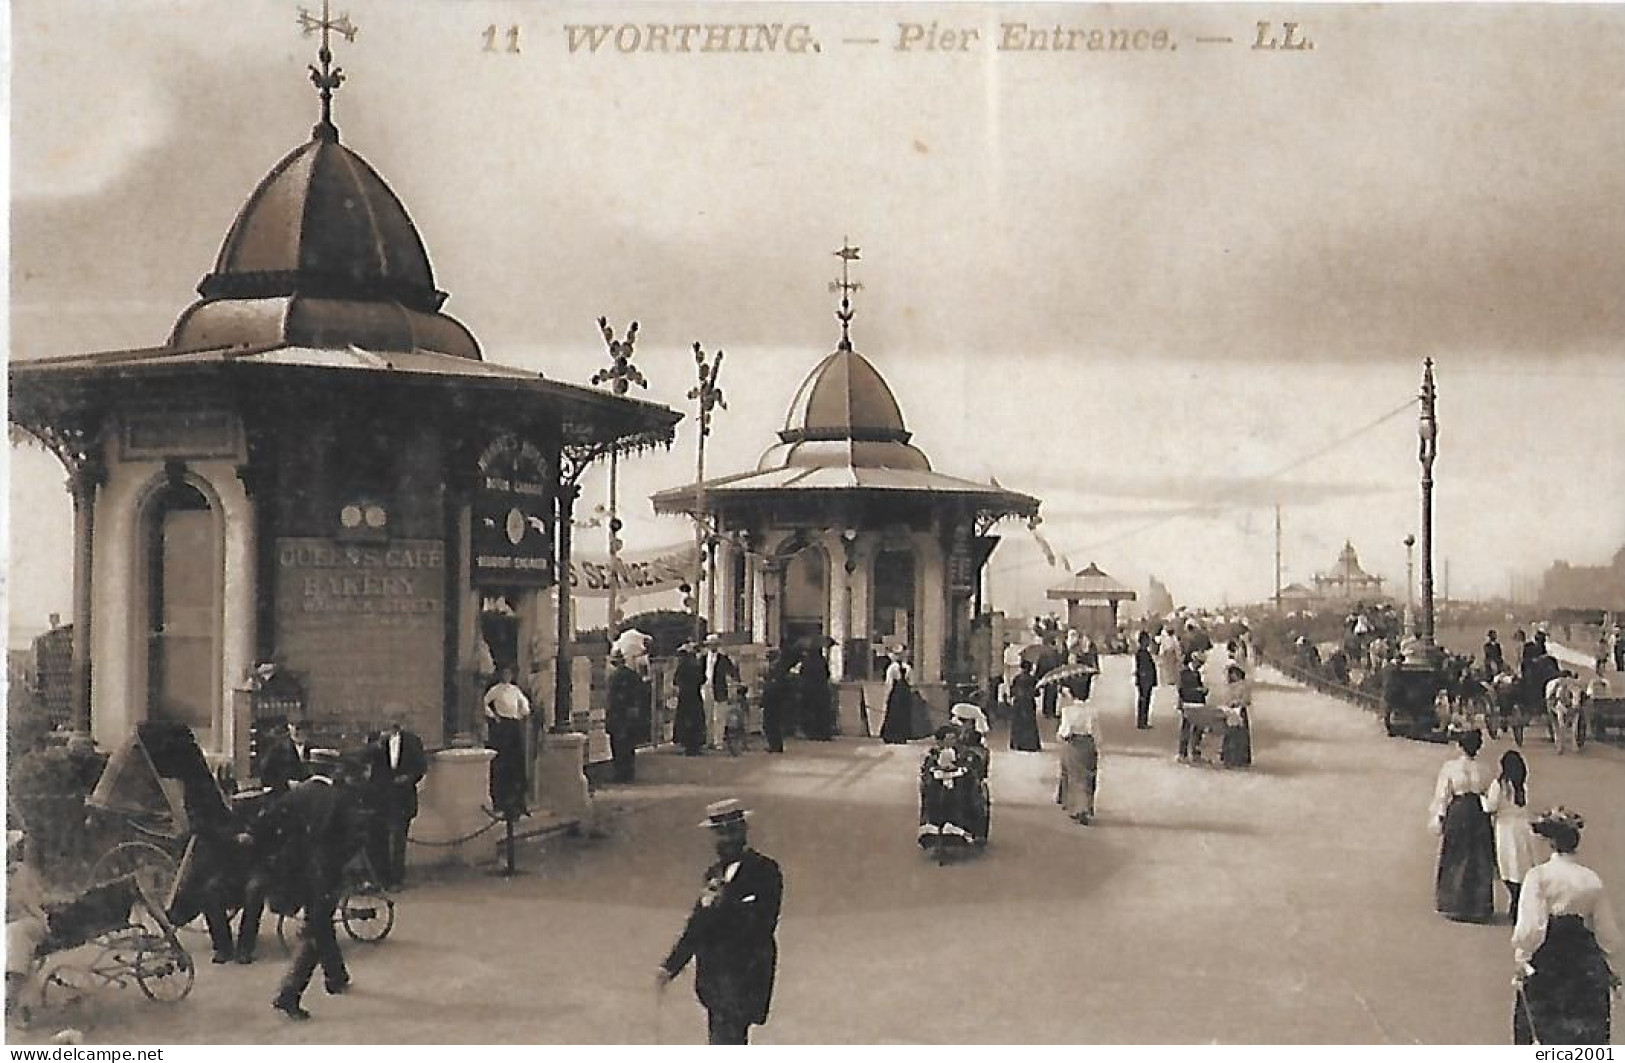 Worthing. Pier Entrance. - Worthing